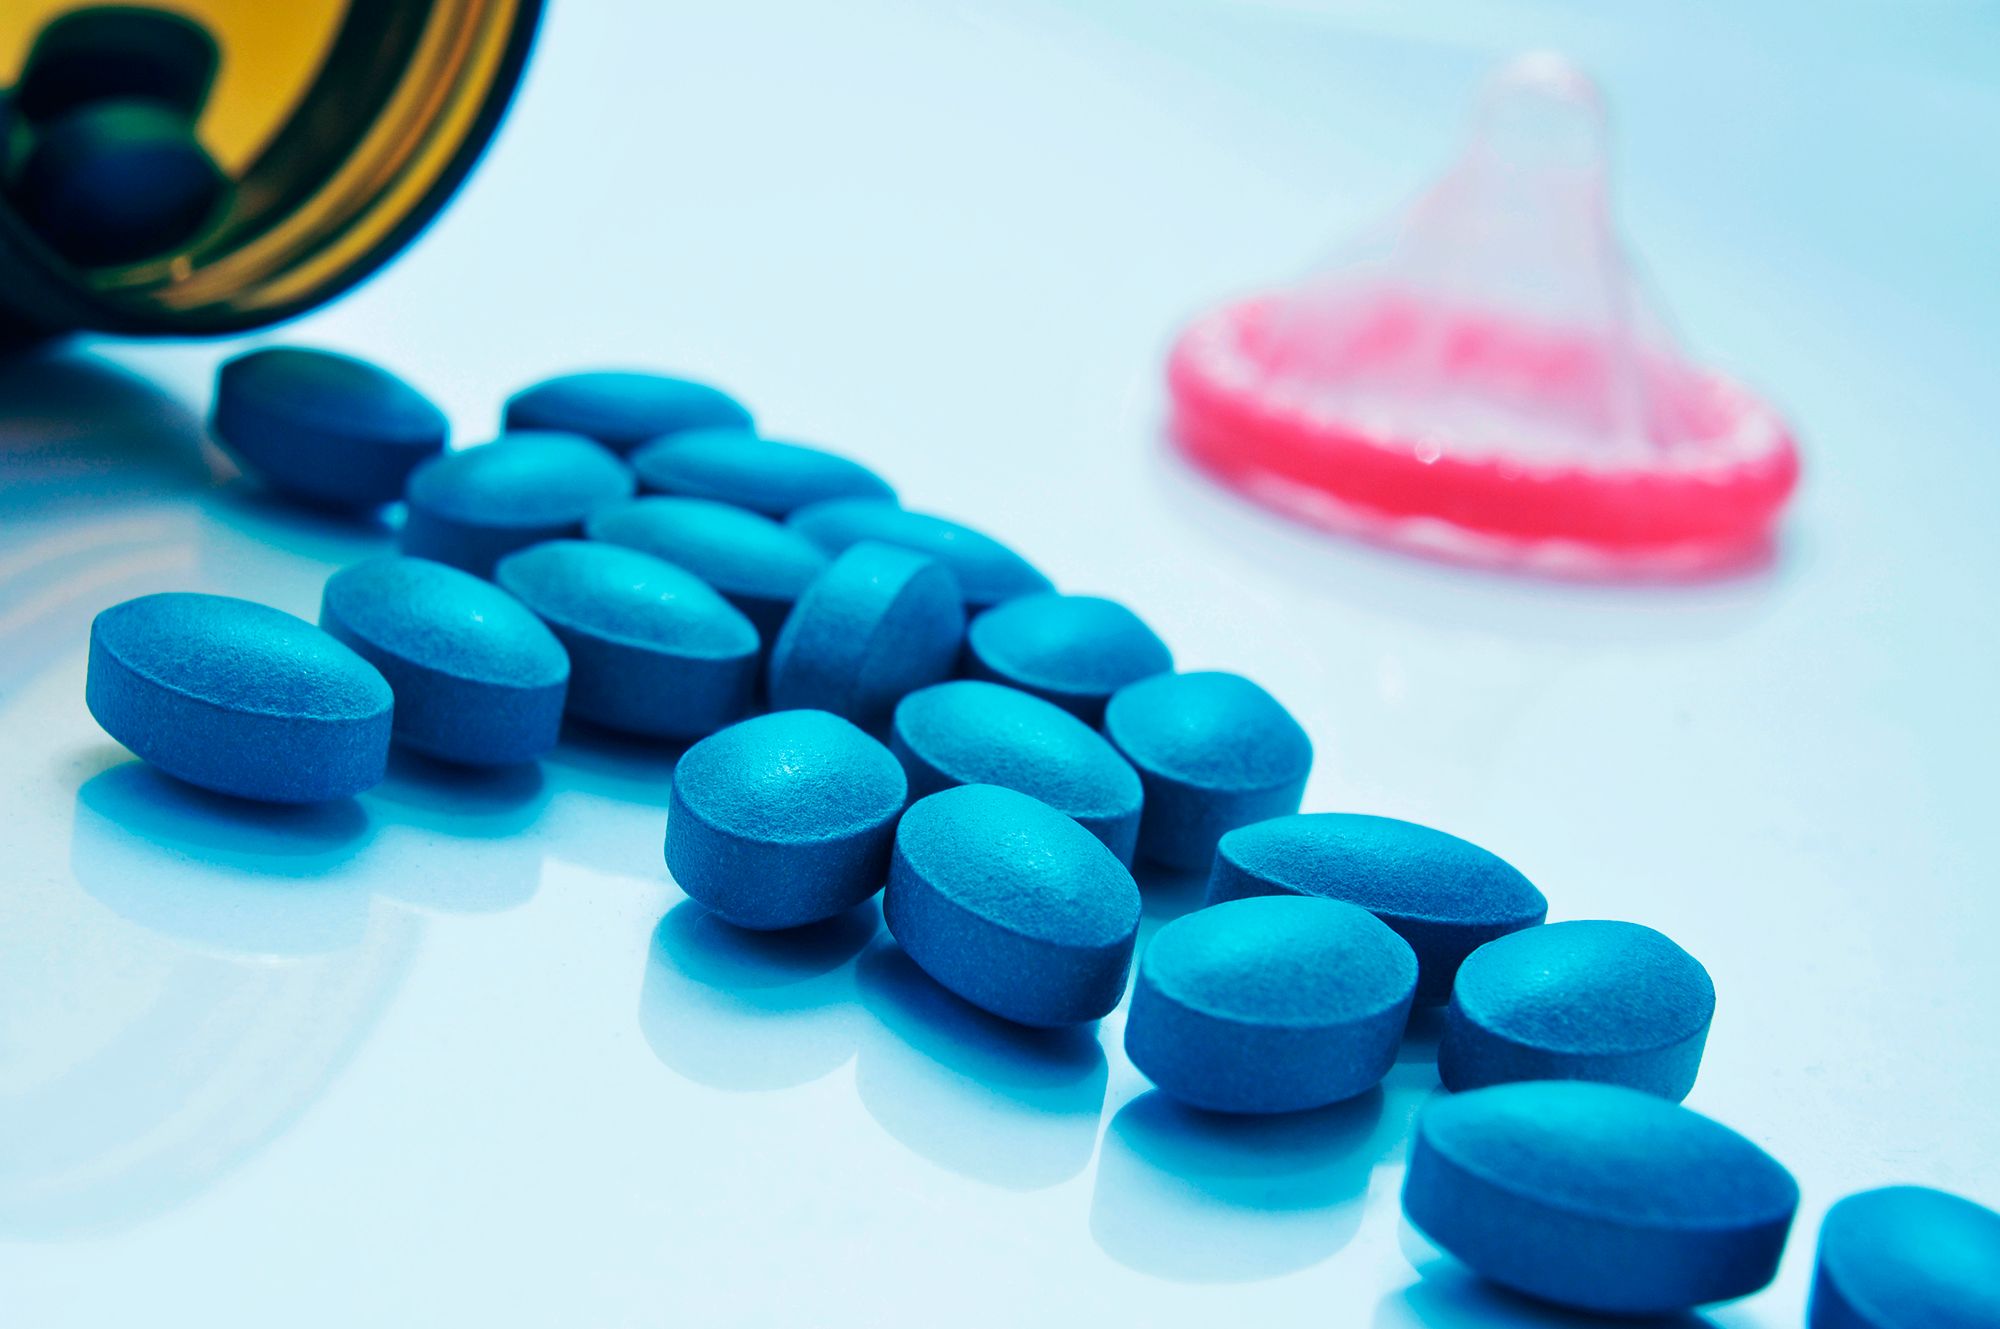 Wer hat Viagra erfunden - Abbildung vieler blauer Pillen auf einer weißen Oberfläche.